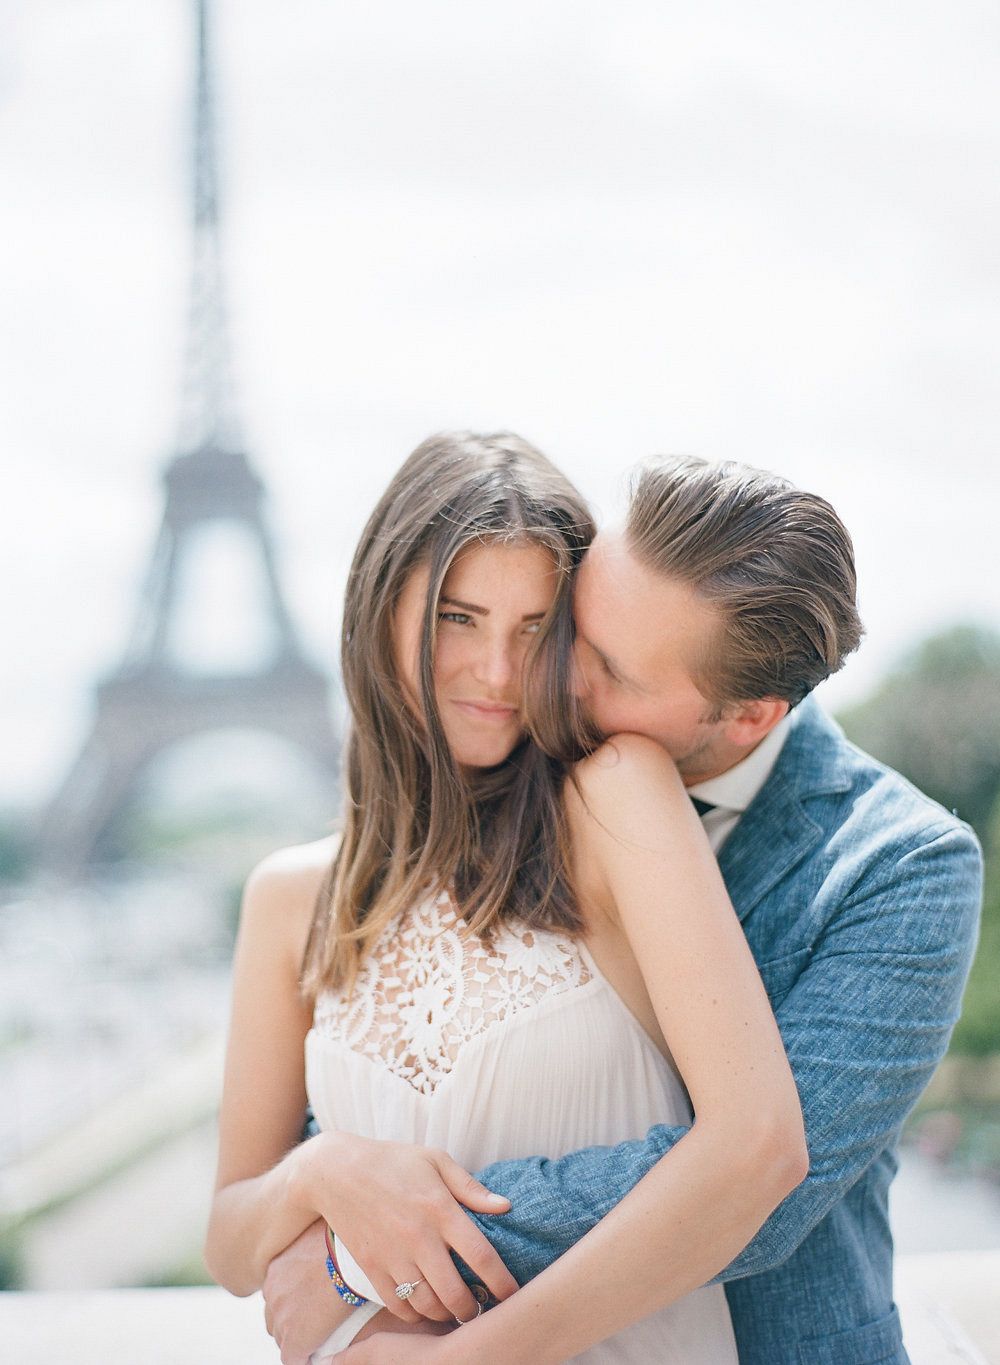 A Parisian couples' session